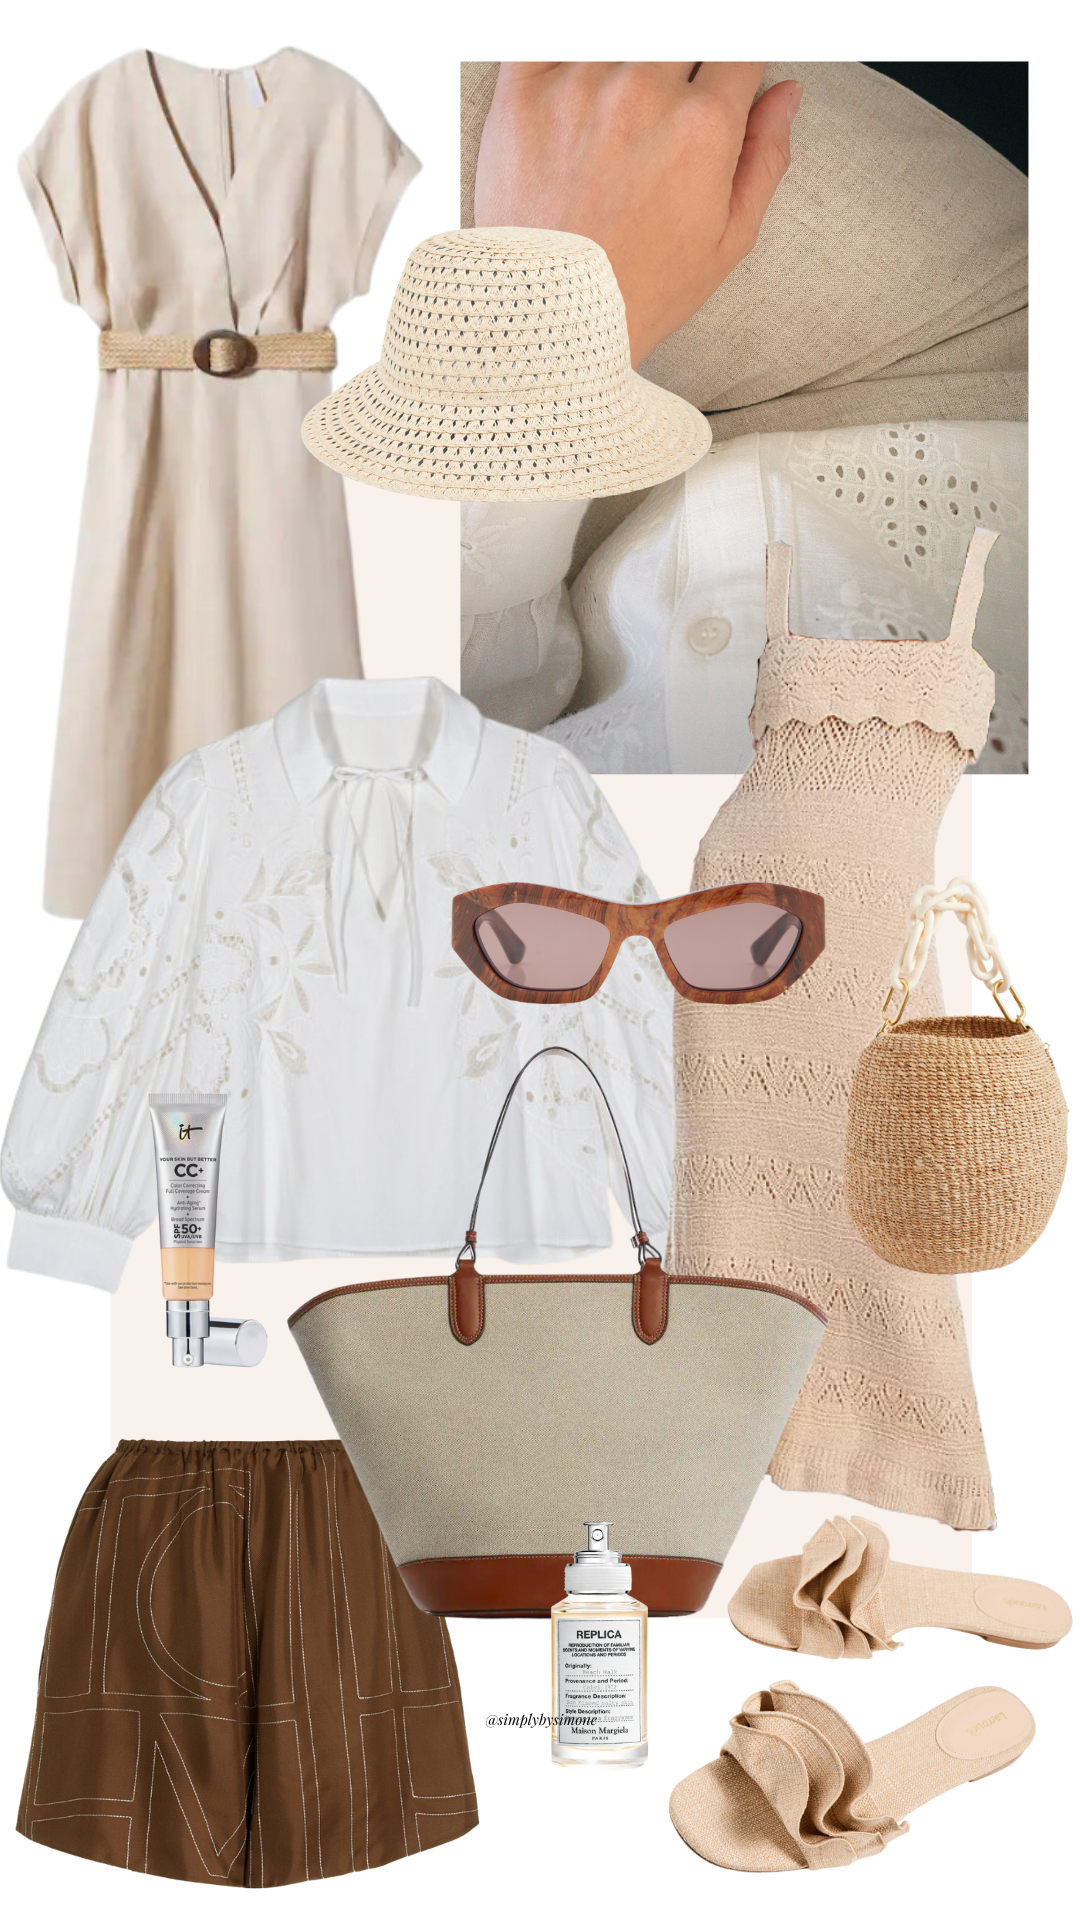 Minimalist Summer Outfit - Clare V. Pot de Miel Bag